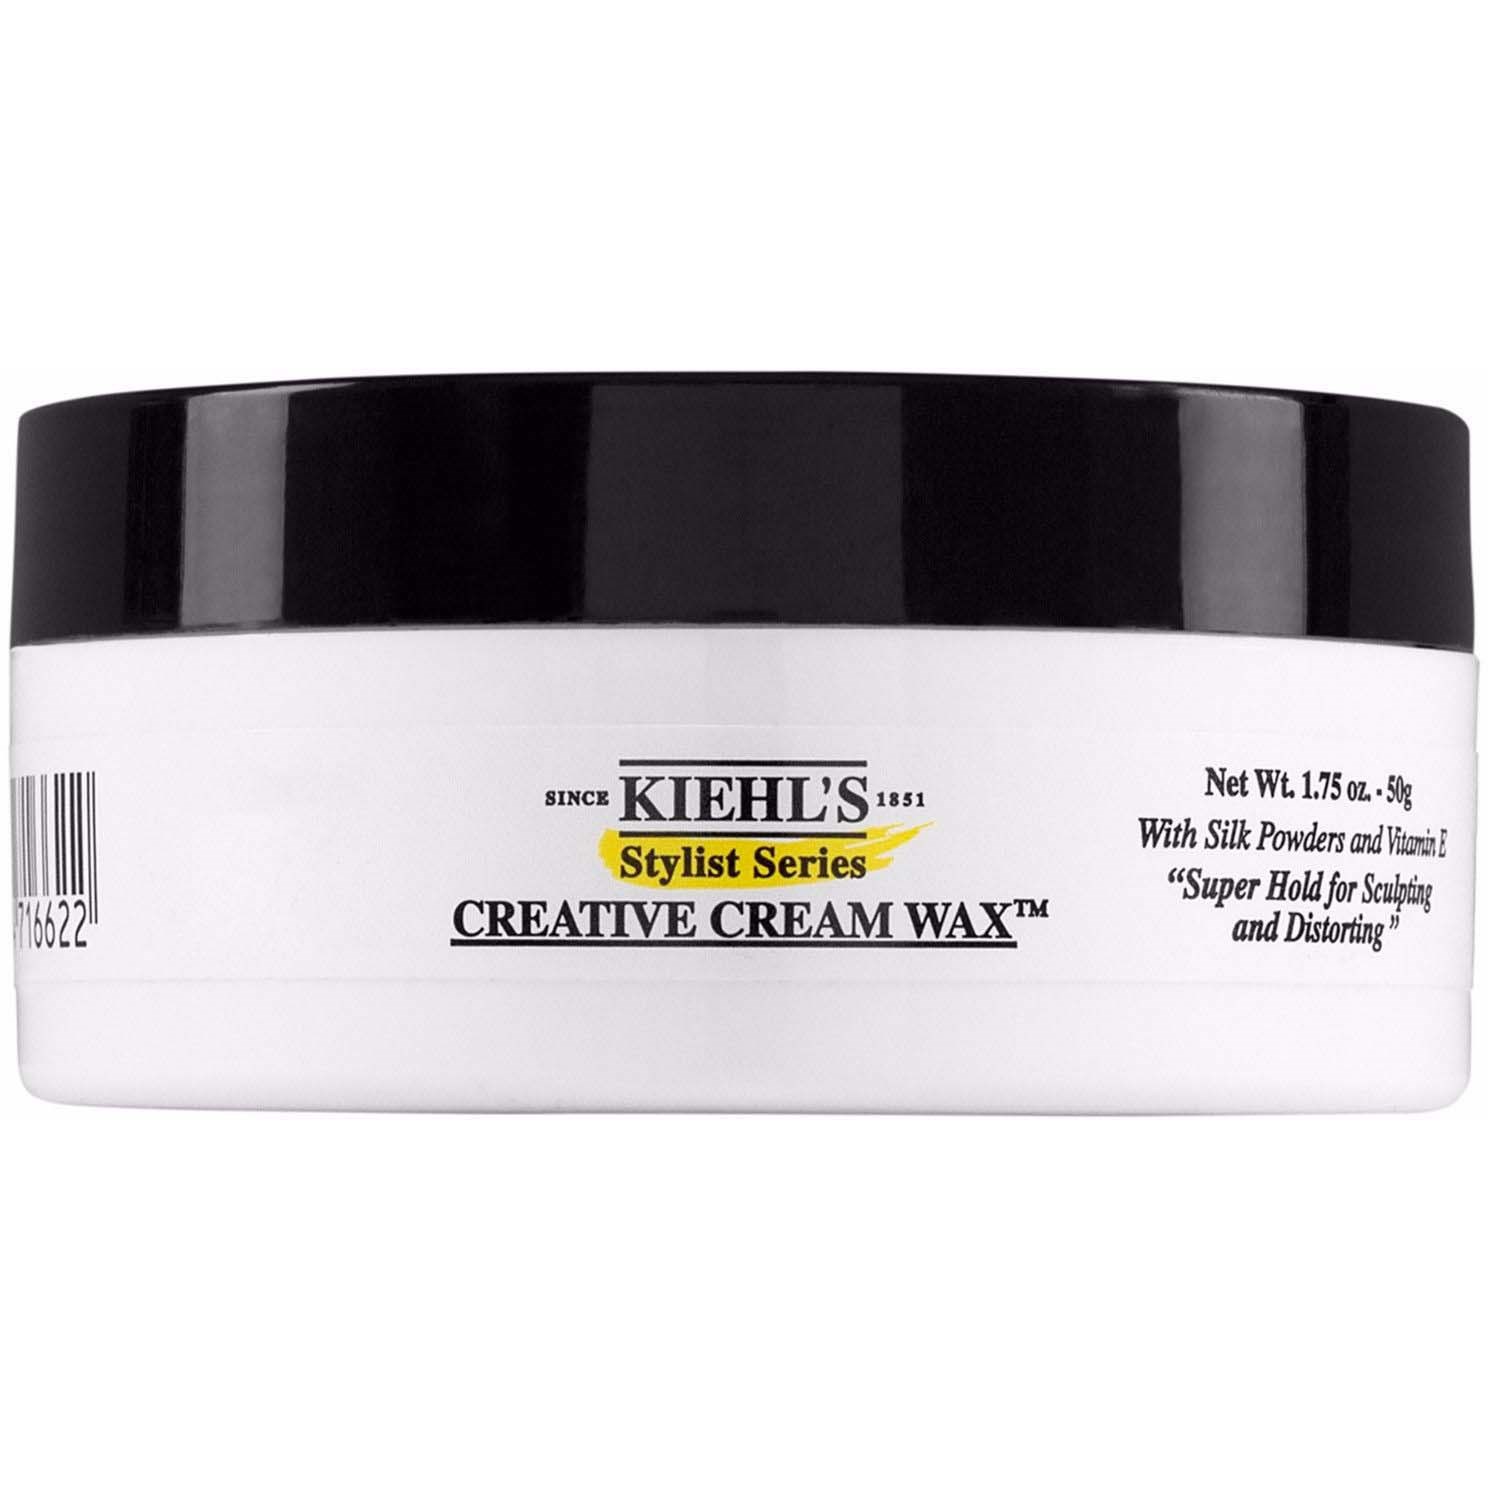 Kiehl's Stylist Series Creative Cream Wax 50 g